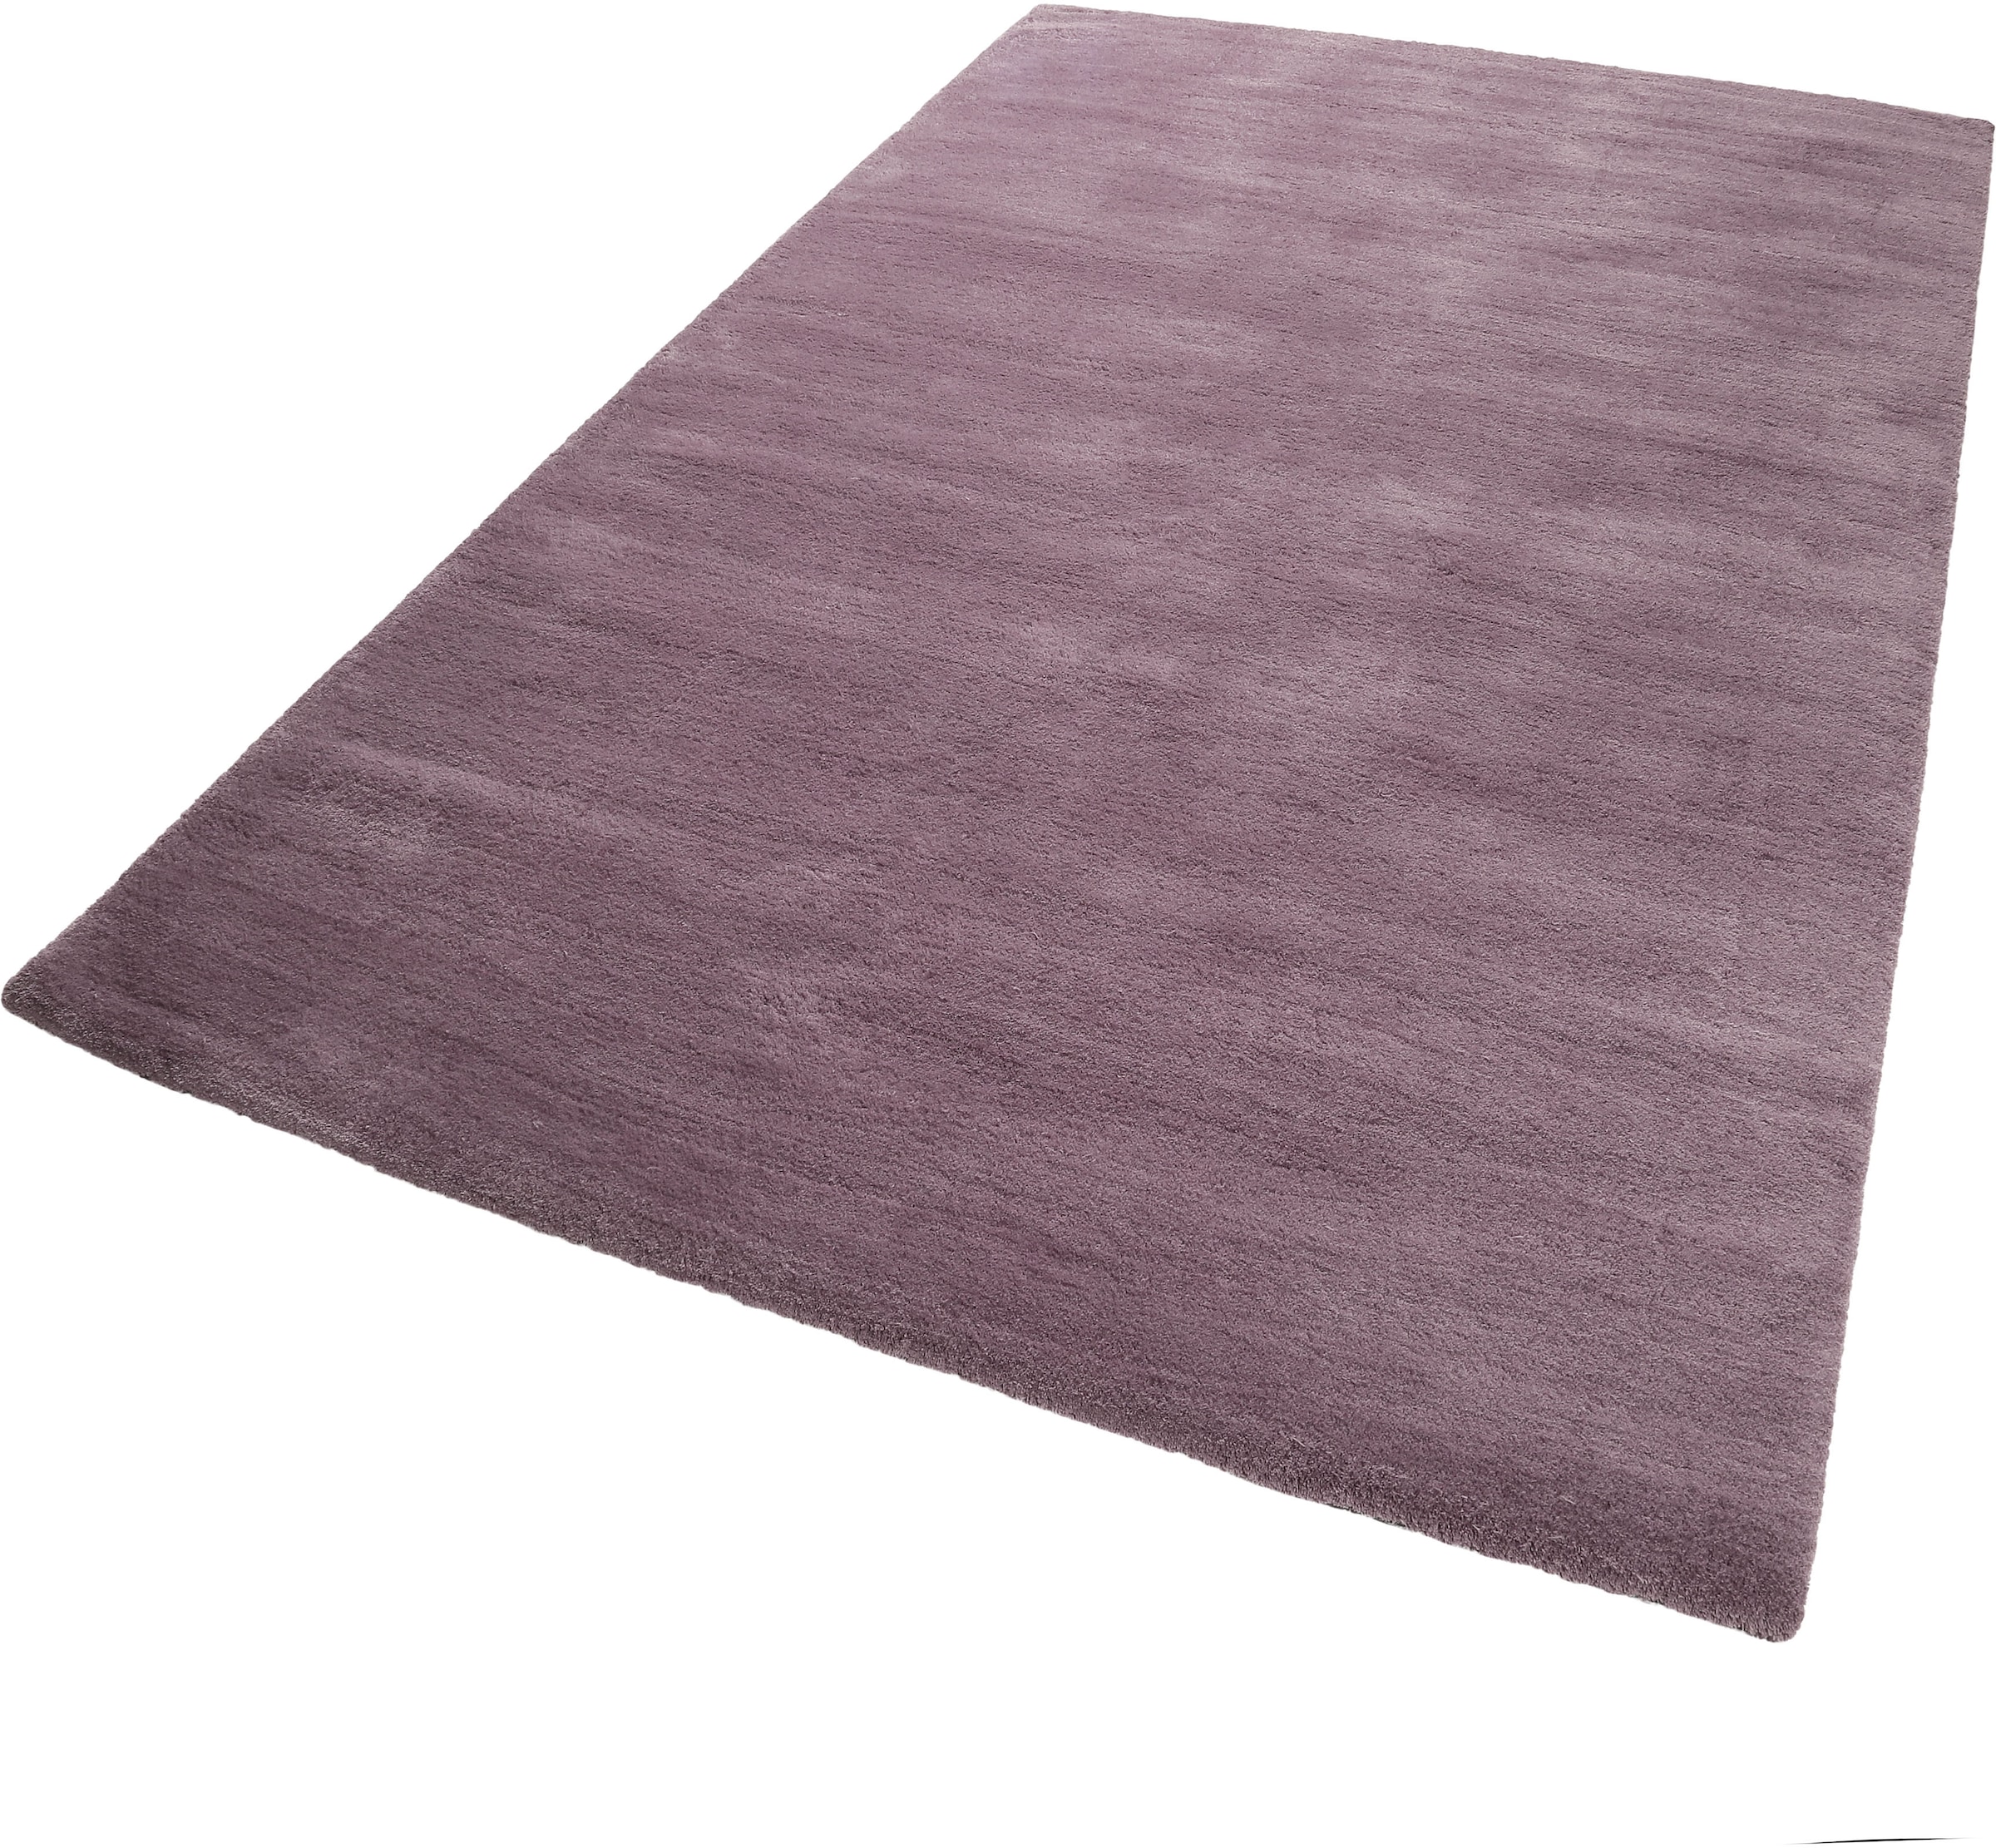 Esprit Teppich »Loft«, rechteckig, grosse dicht Farbauswahl, robust auf weicher sehr versandkostenfrei gewebt, Flor, Wohnzimmer